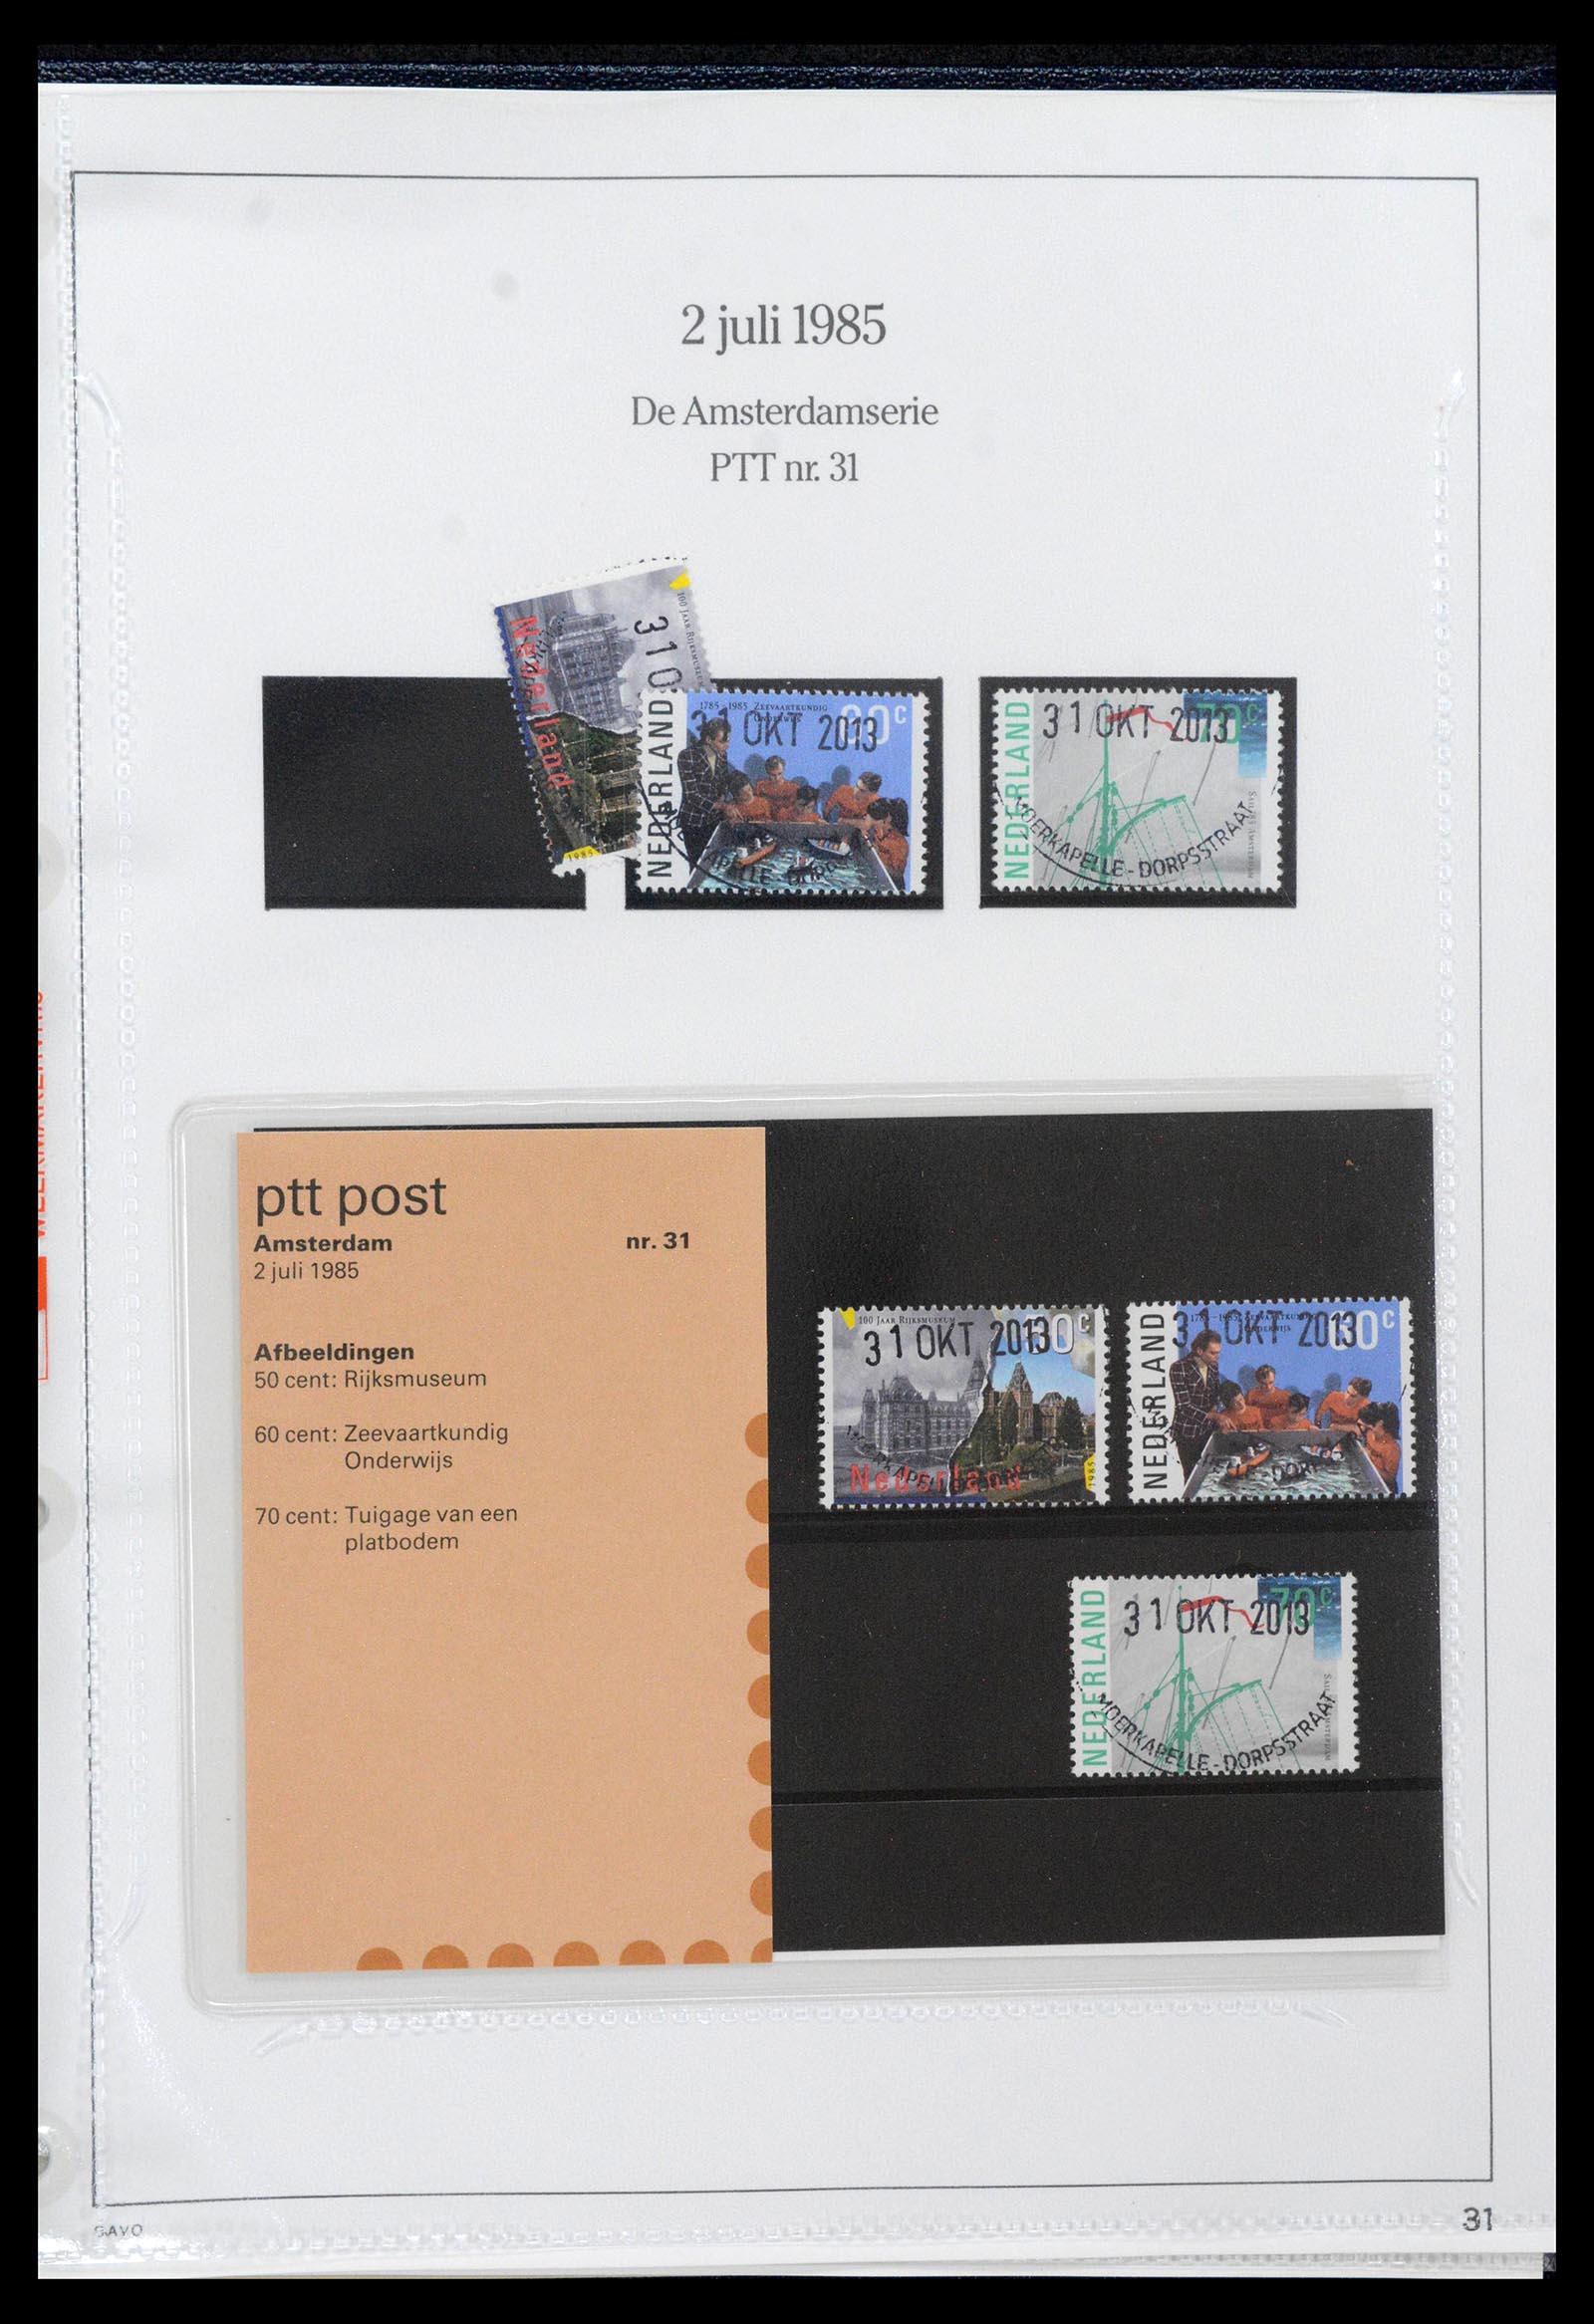 39121 0031 - Stamp collection 39121 Netherlands presentationpacks 1982-2001.